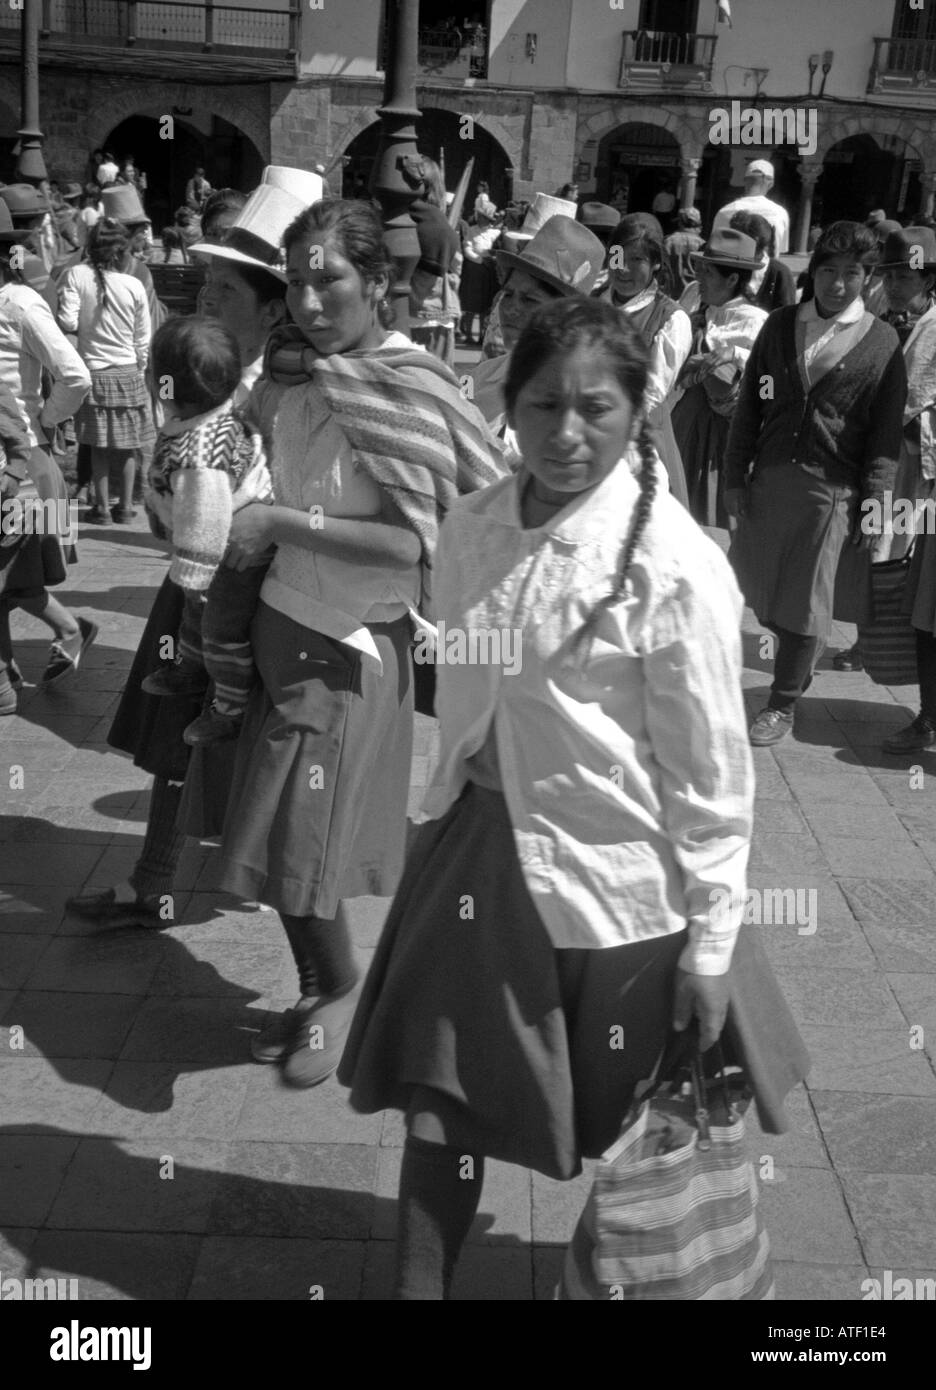 Les populations autochtones du groupe de femmes enfants recueillir place publique de marche de protestation mars Cuzco Pérou Amérique Latine du Sud Banque D'Images